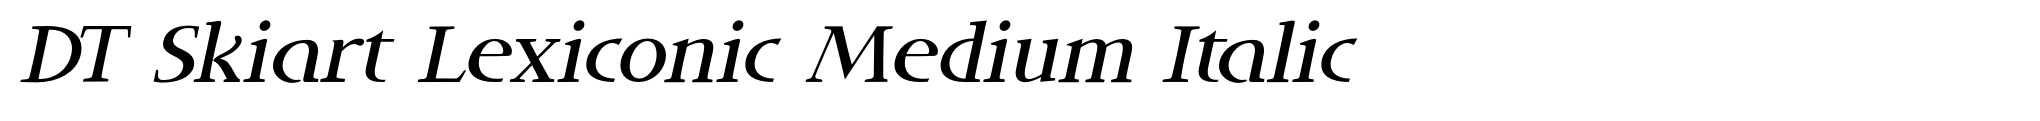 DT Skiart Lexiconic Medium Italic image